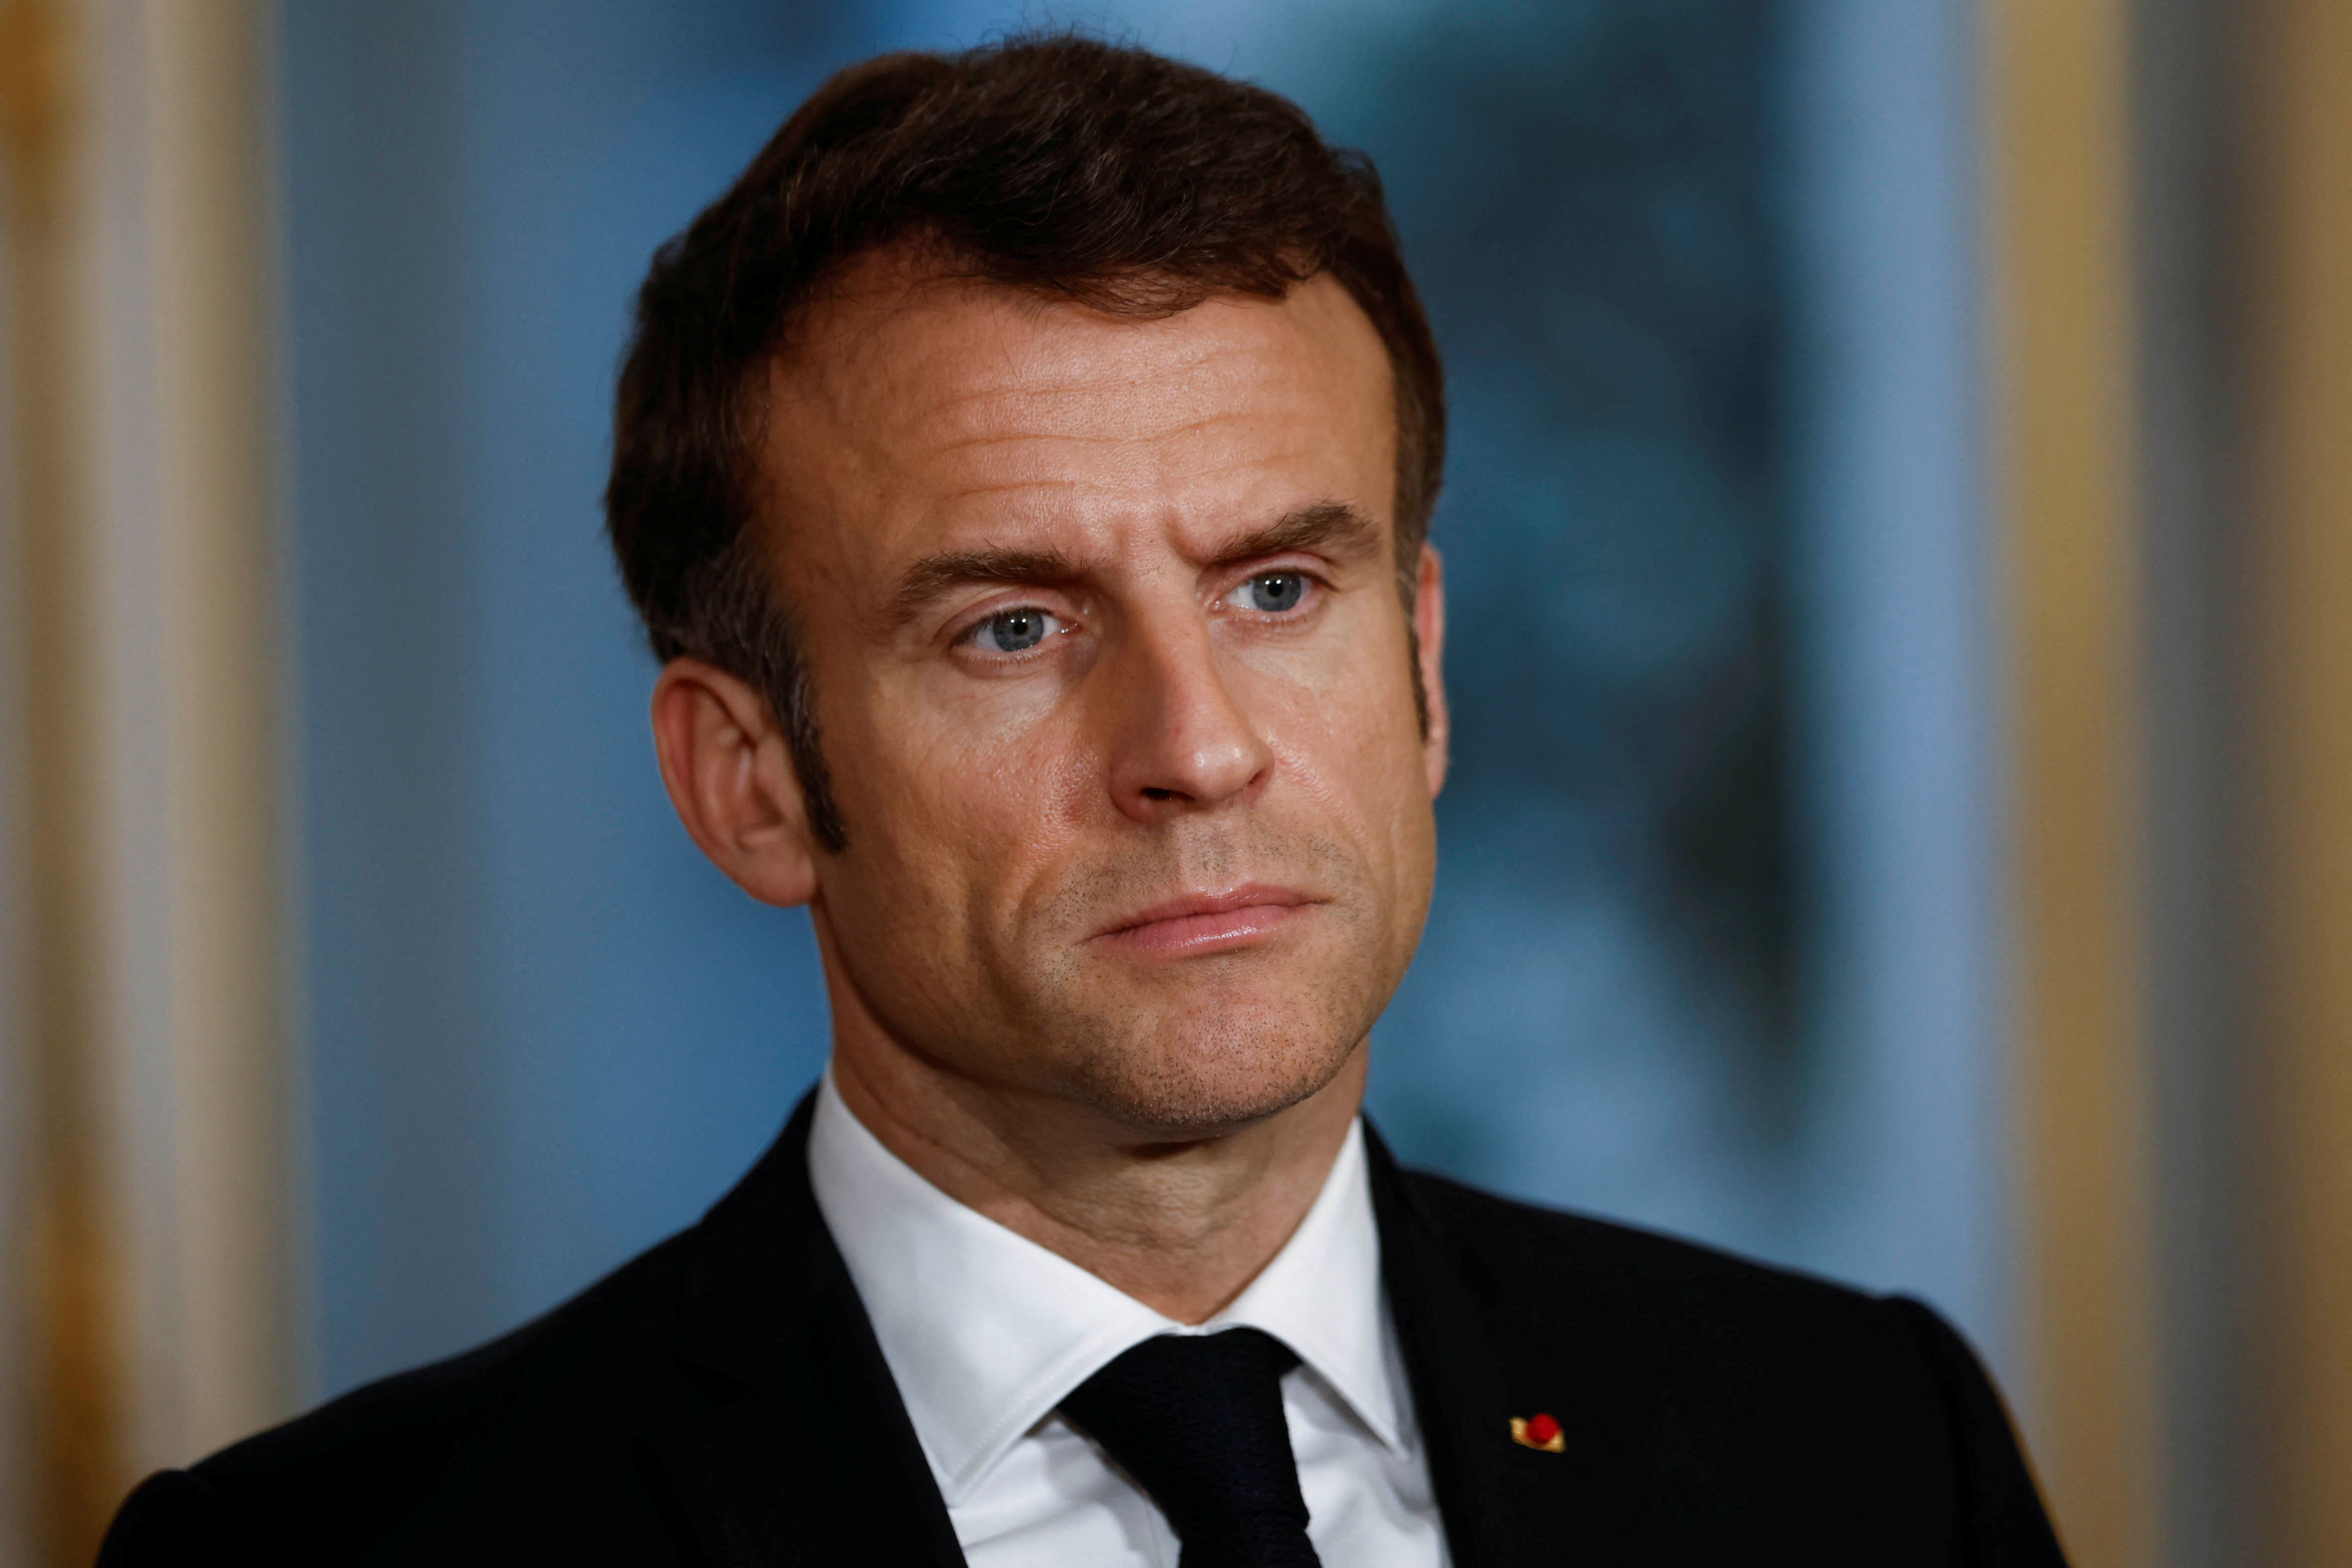 El presidente Macron autorizó la ley mediante decreto ya que no logró los votos en el Parlamento. (Yoan Valat/via REUTERS)